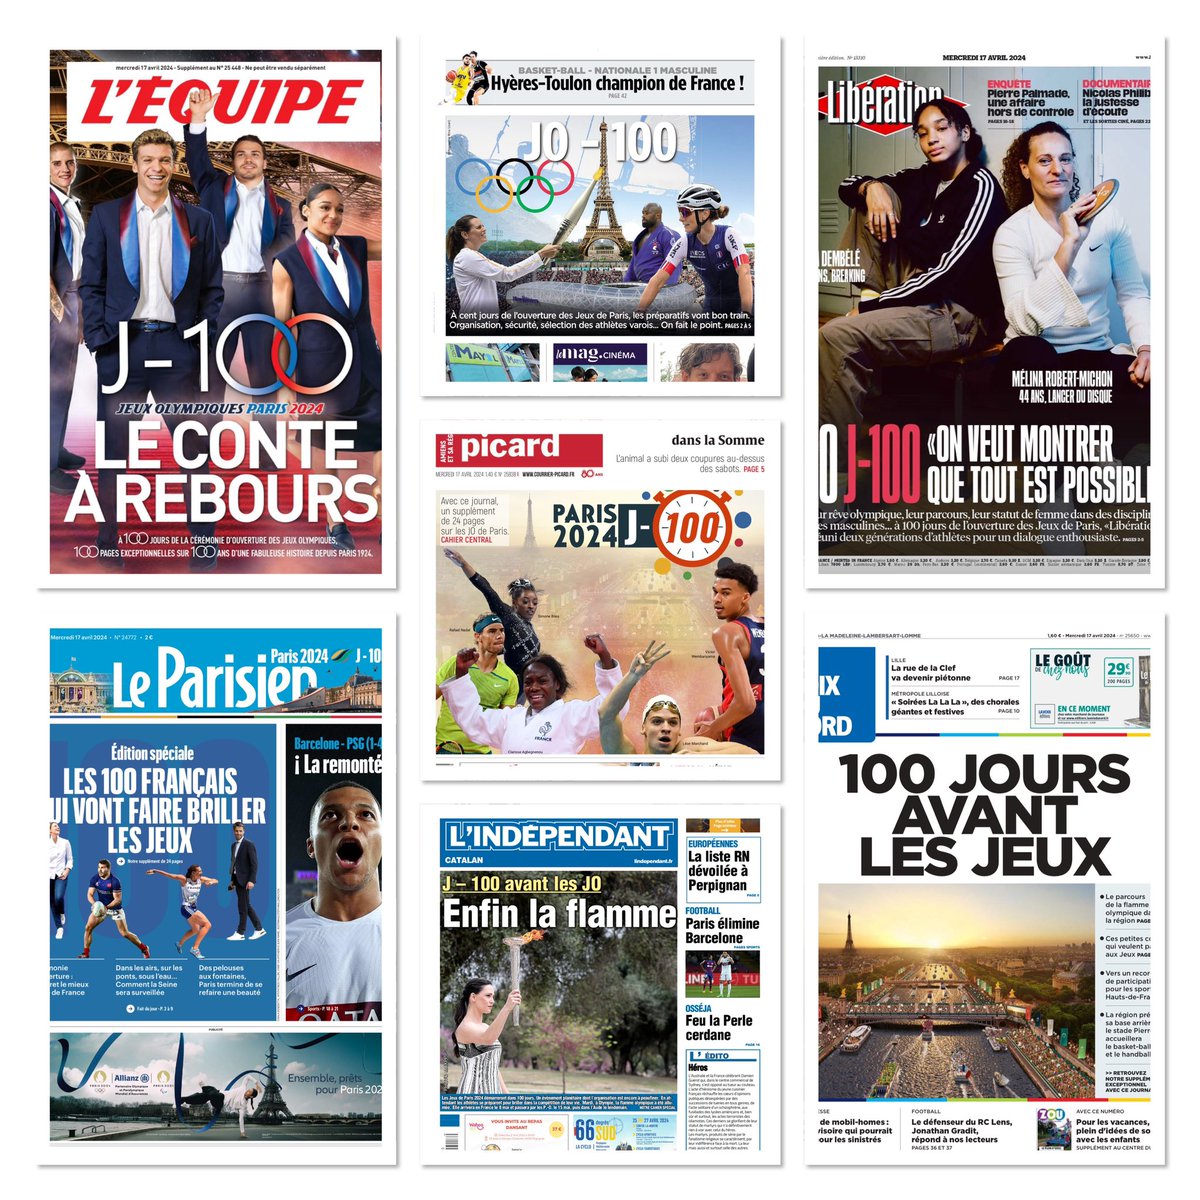 J-100⏳avant les Jeux Olympiques et Paralympiques #Paris2024 🇨🇵 🗞️ Les quotidiens régionaux et nationaux en font leur UNE ce matin ! @Paris2024